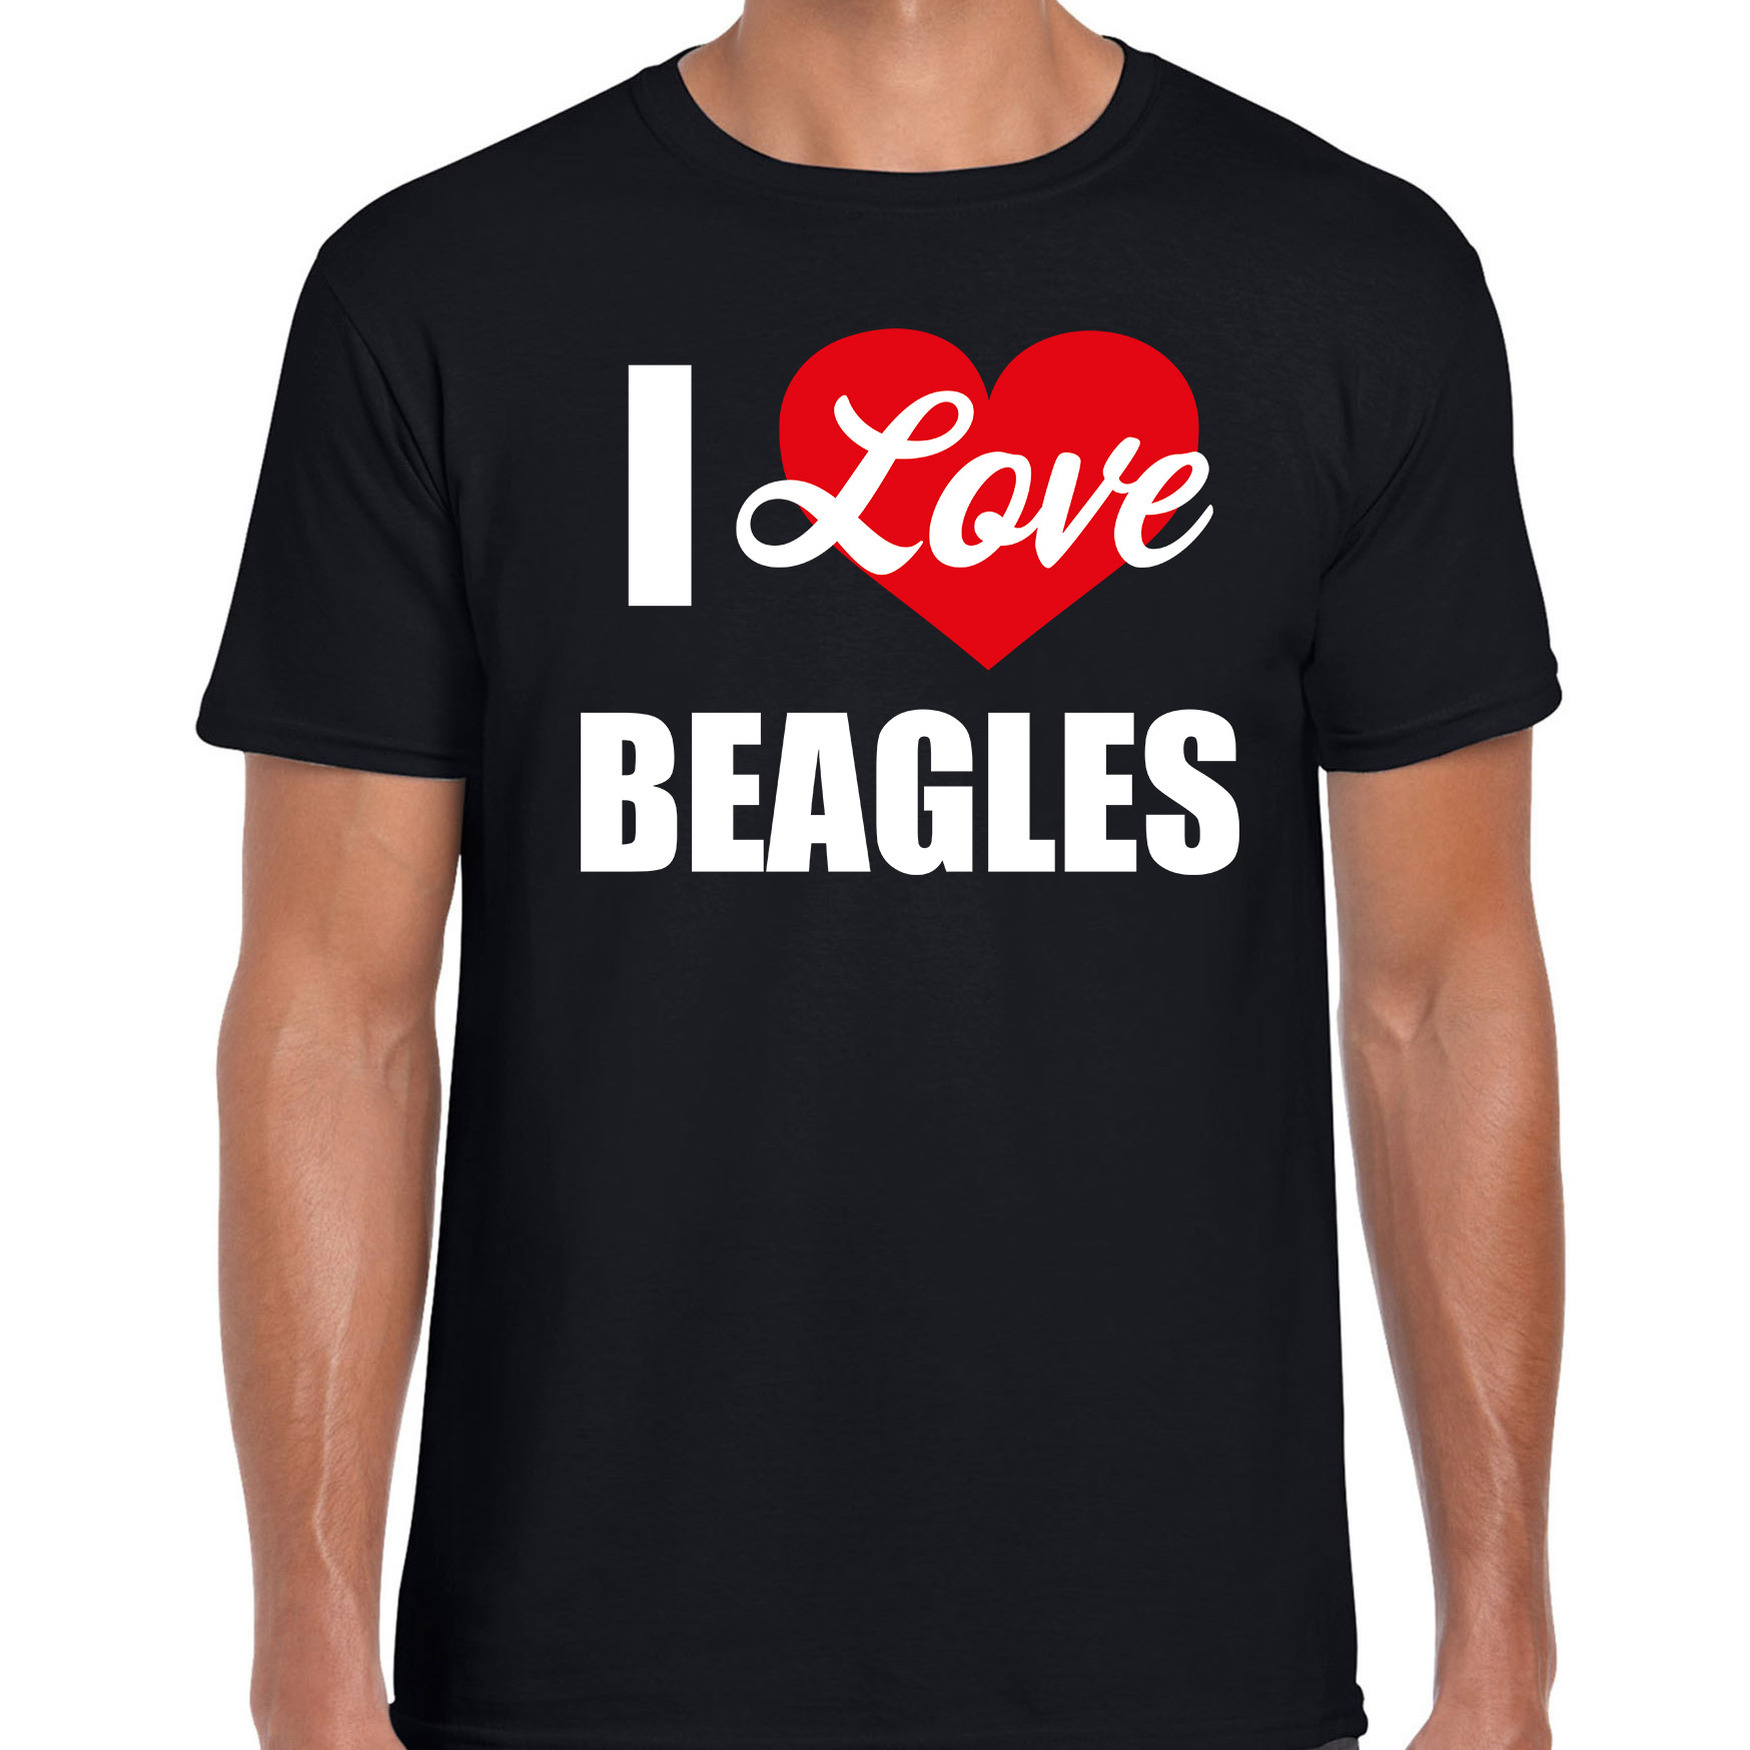 I love Beagles honden t-shirt zwart voor heren